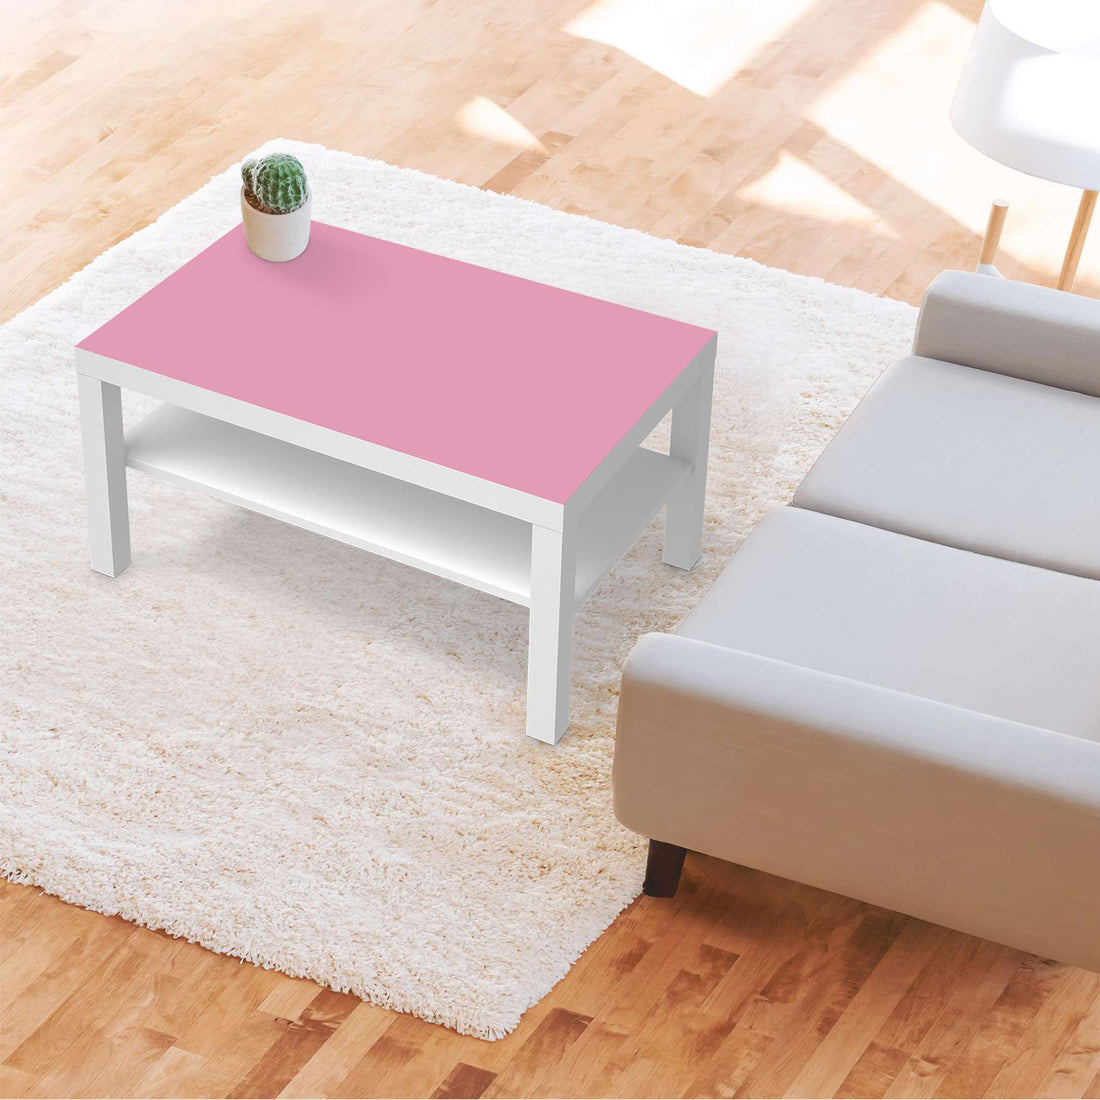 Möbelfolie Pink Light - IKEA Lack Tisch 90x55 cm - Wohnzimmer